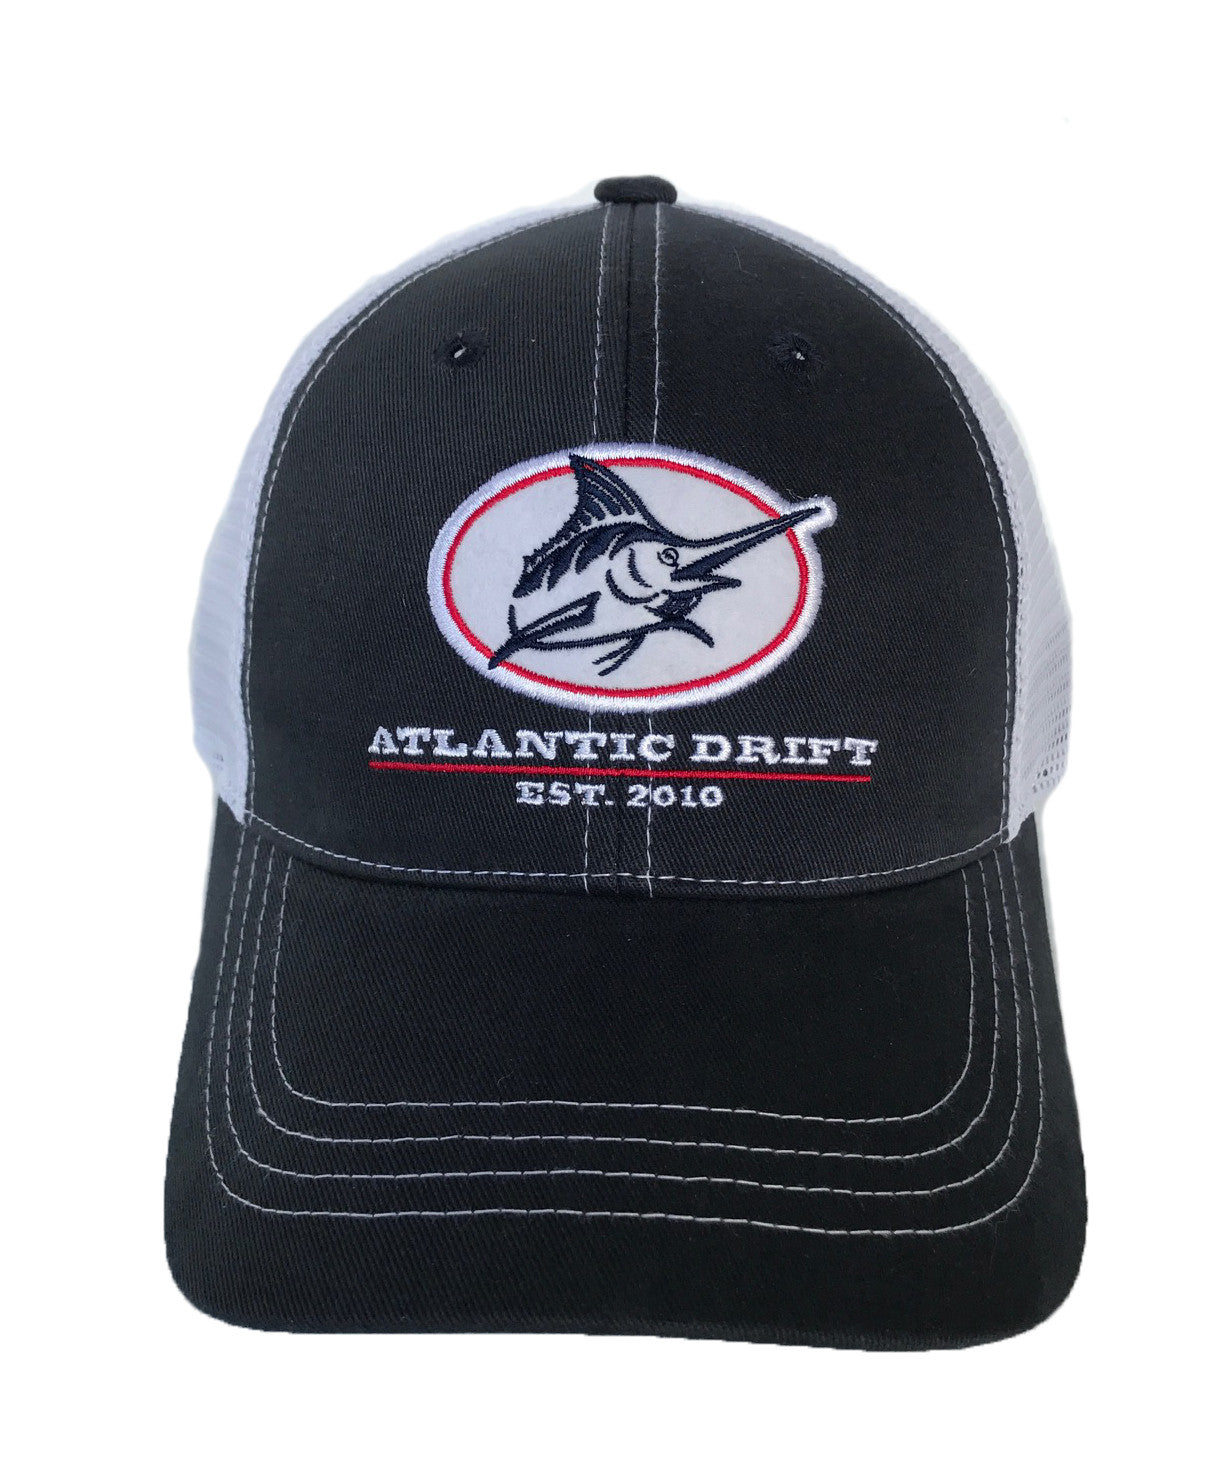 Outlaw Mesh-Back Hat - Navy/White - Atlantic Drift